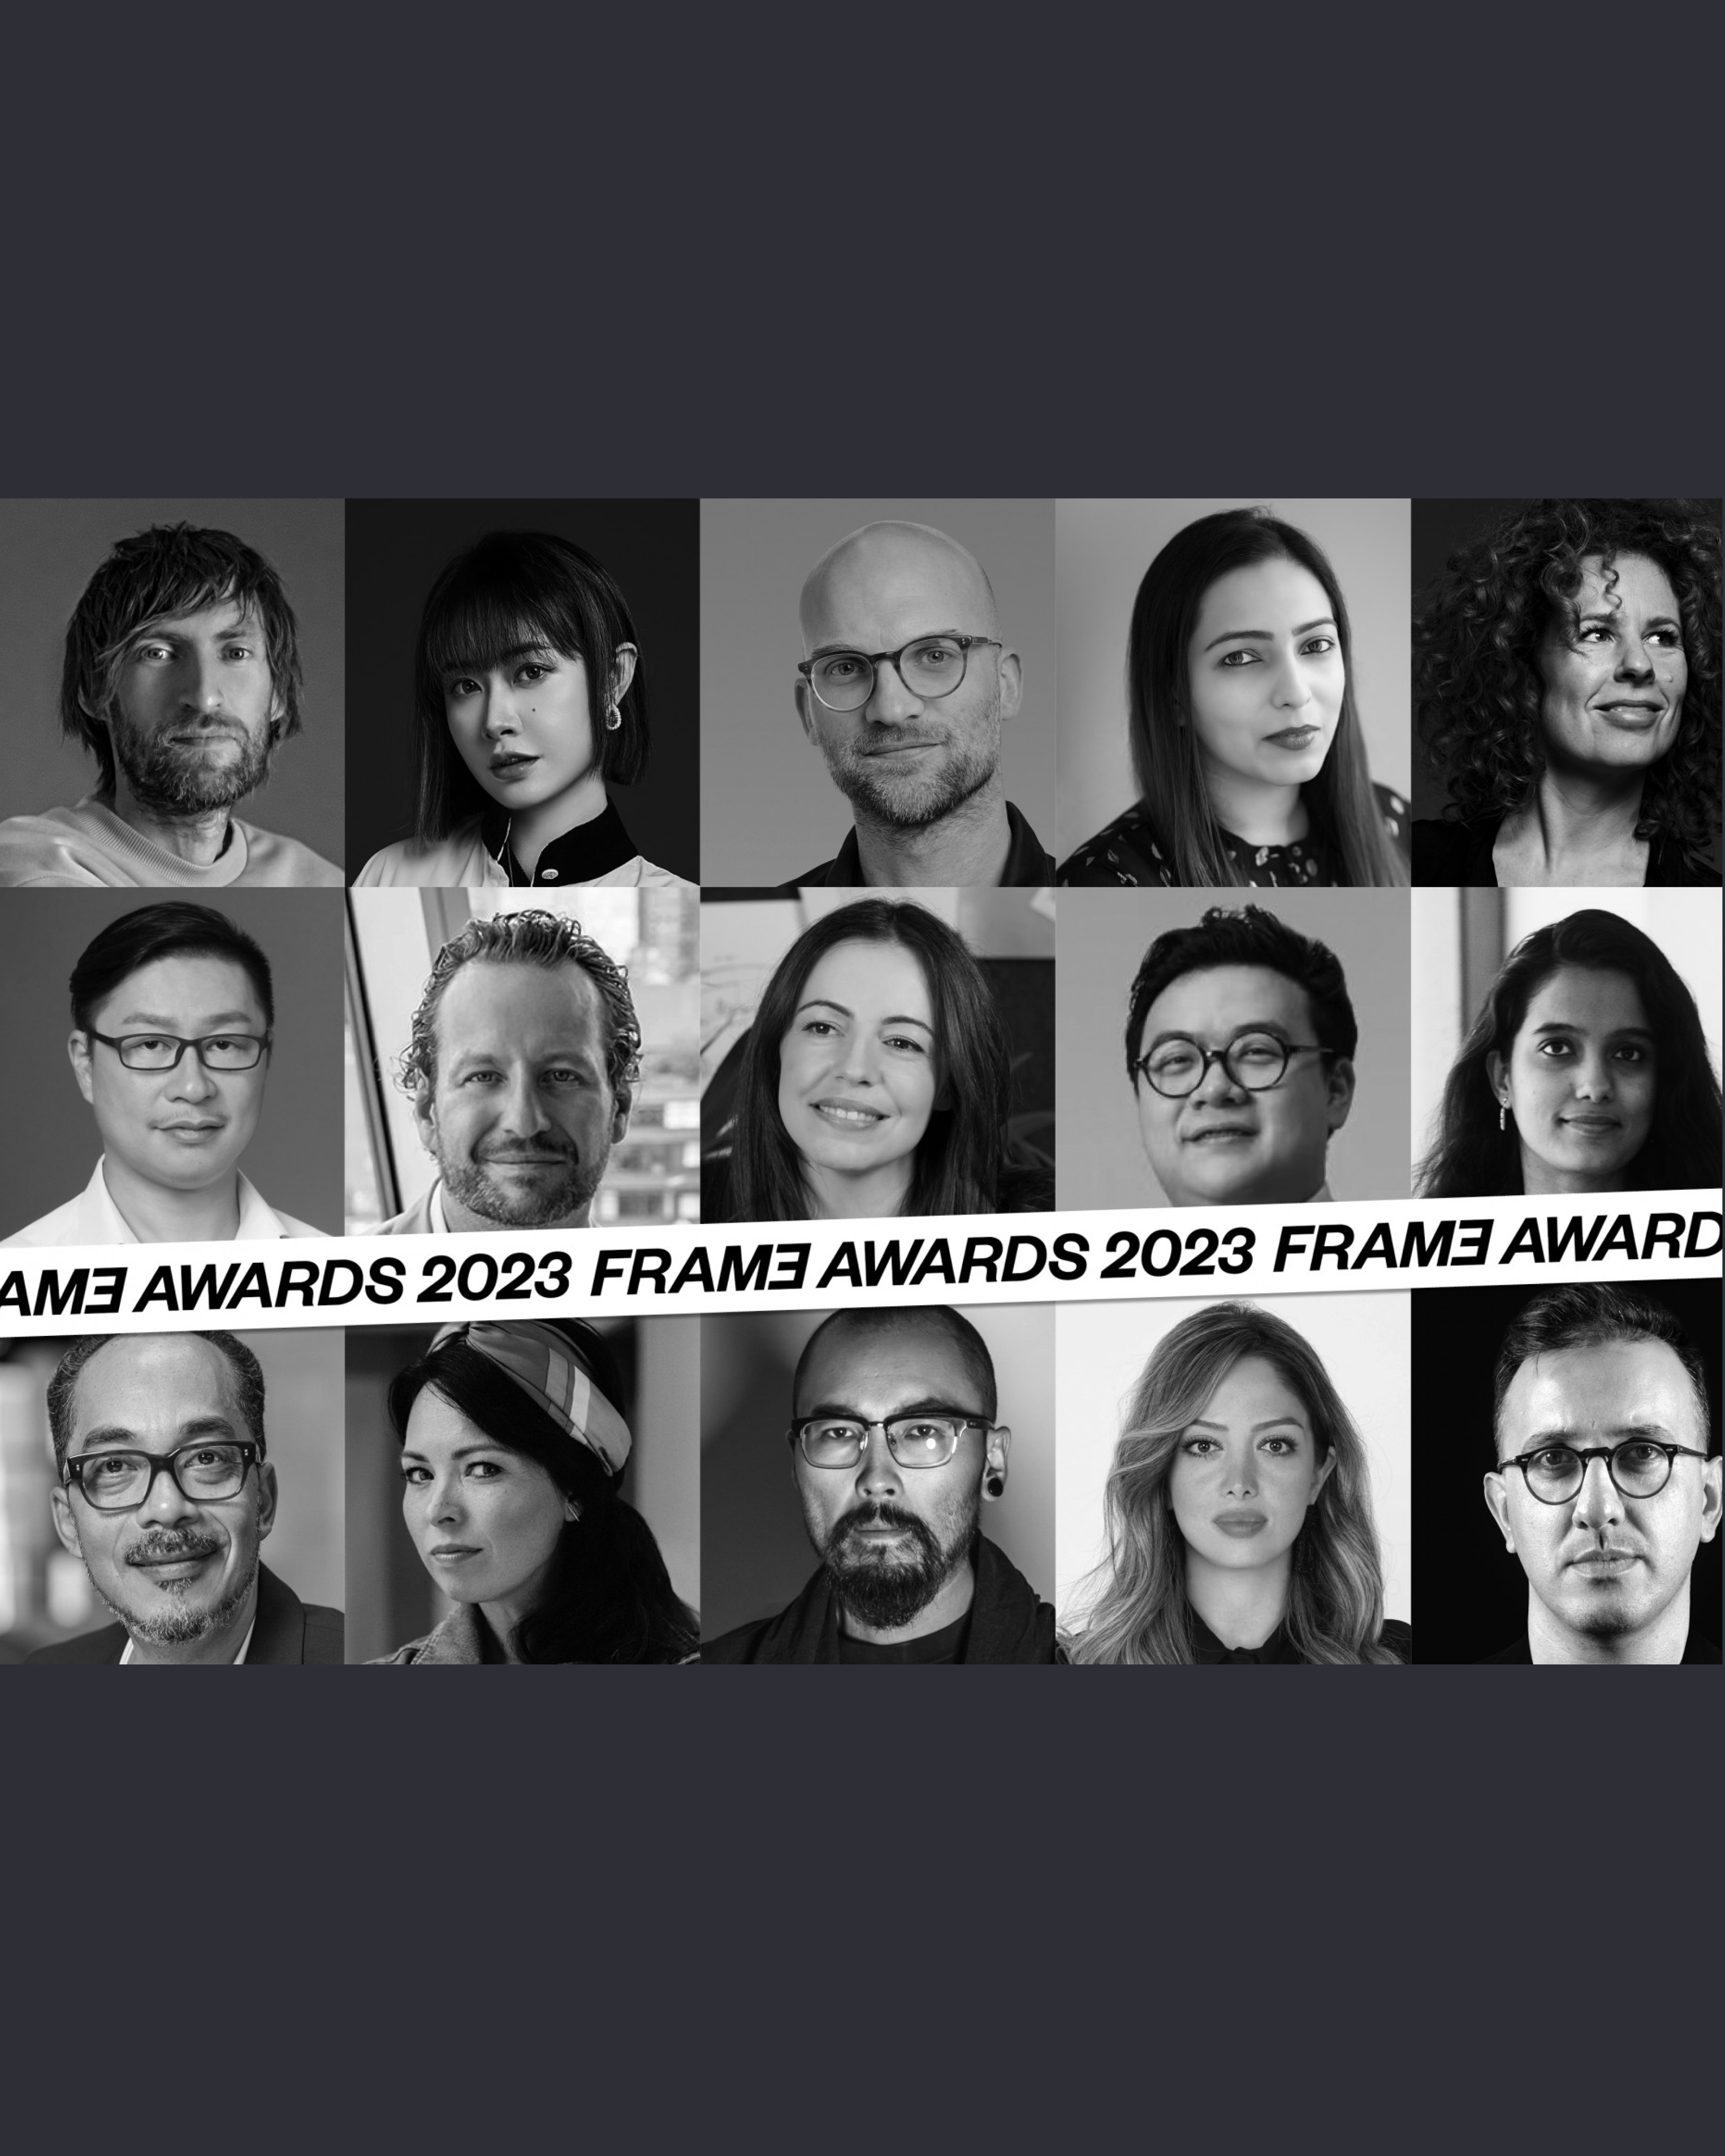 Güray Oskay Joins Jury Panel of Frame Awards 2023